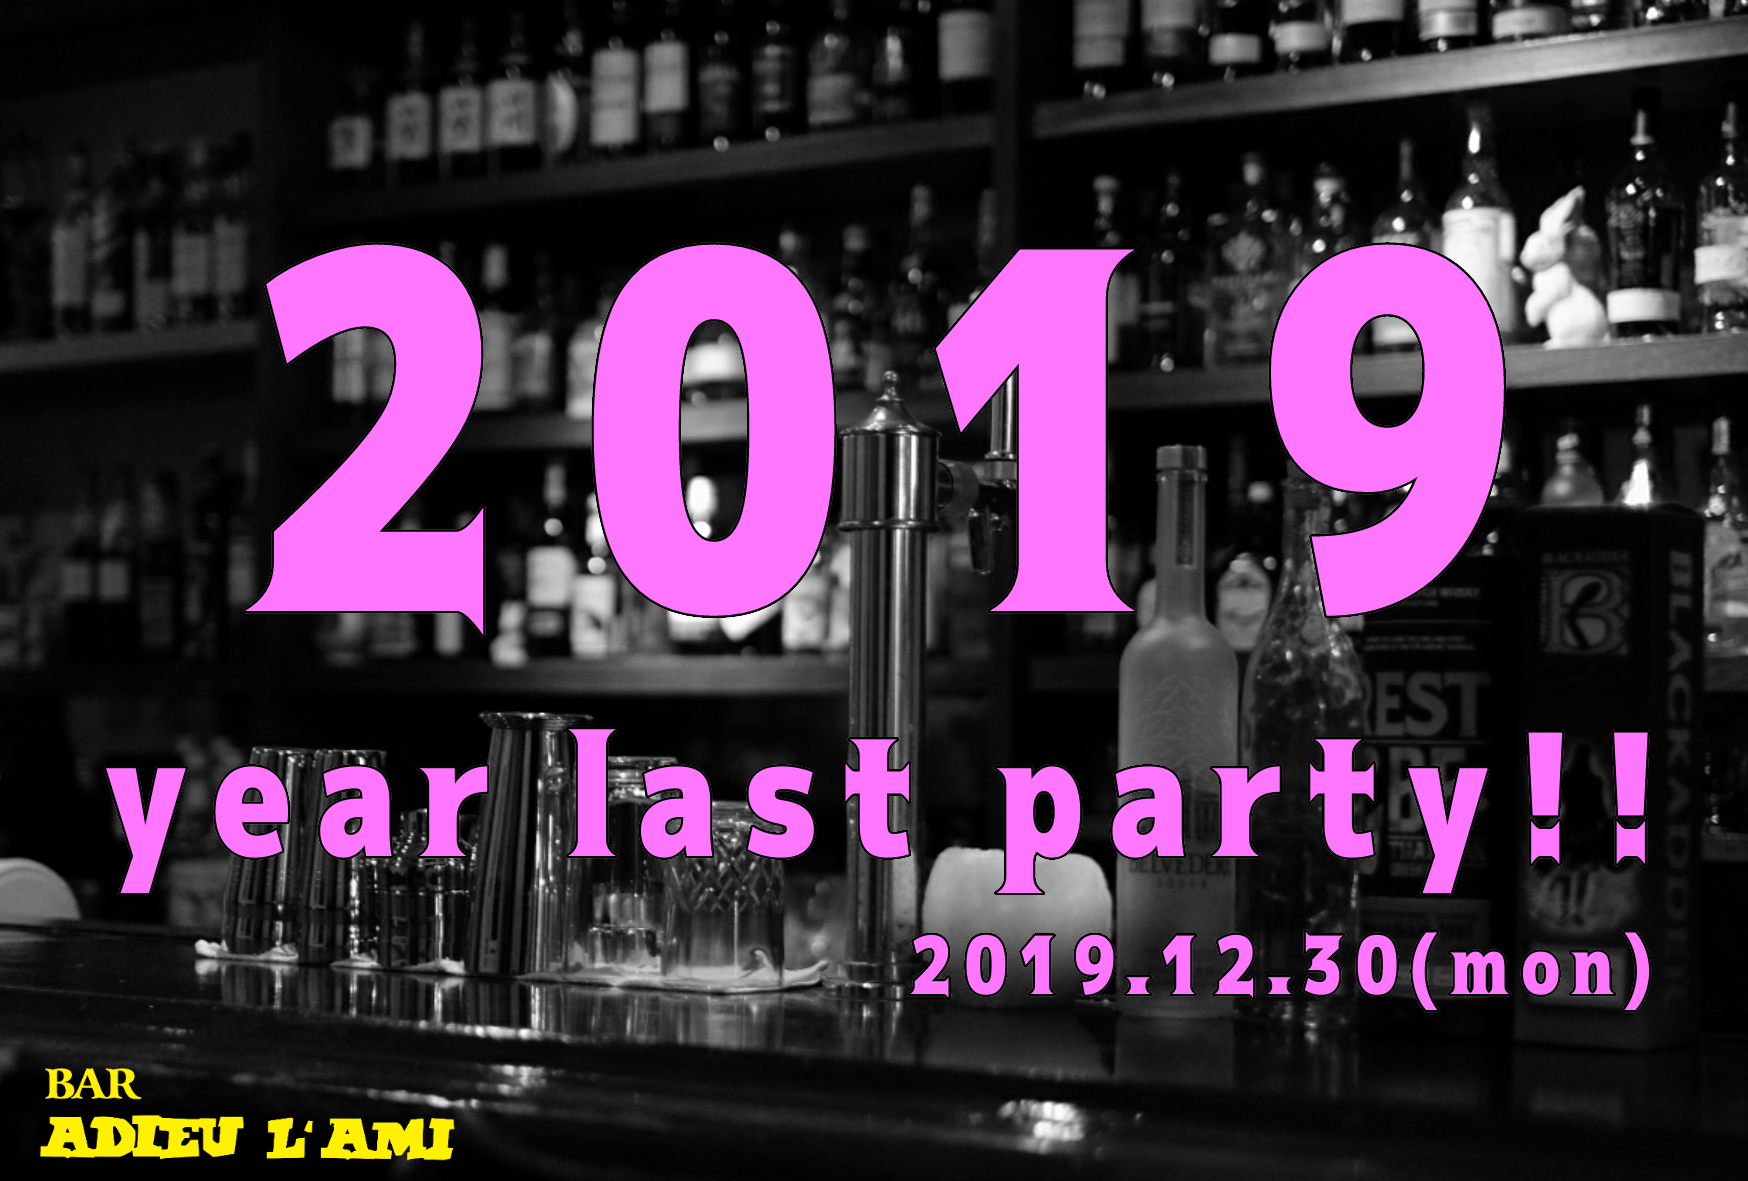 2019、忘年会、DJ 、パーティー、群馬、高崎、バー、アデューラミ、カクテル、ウイスキー、シガー、